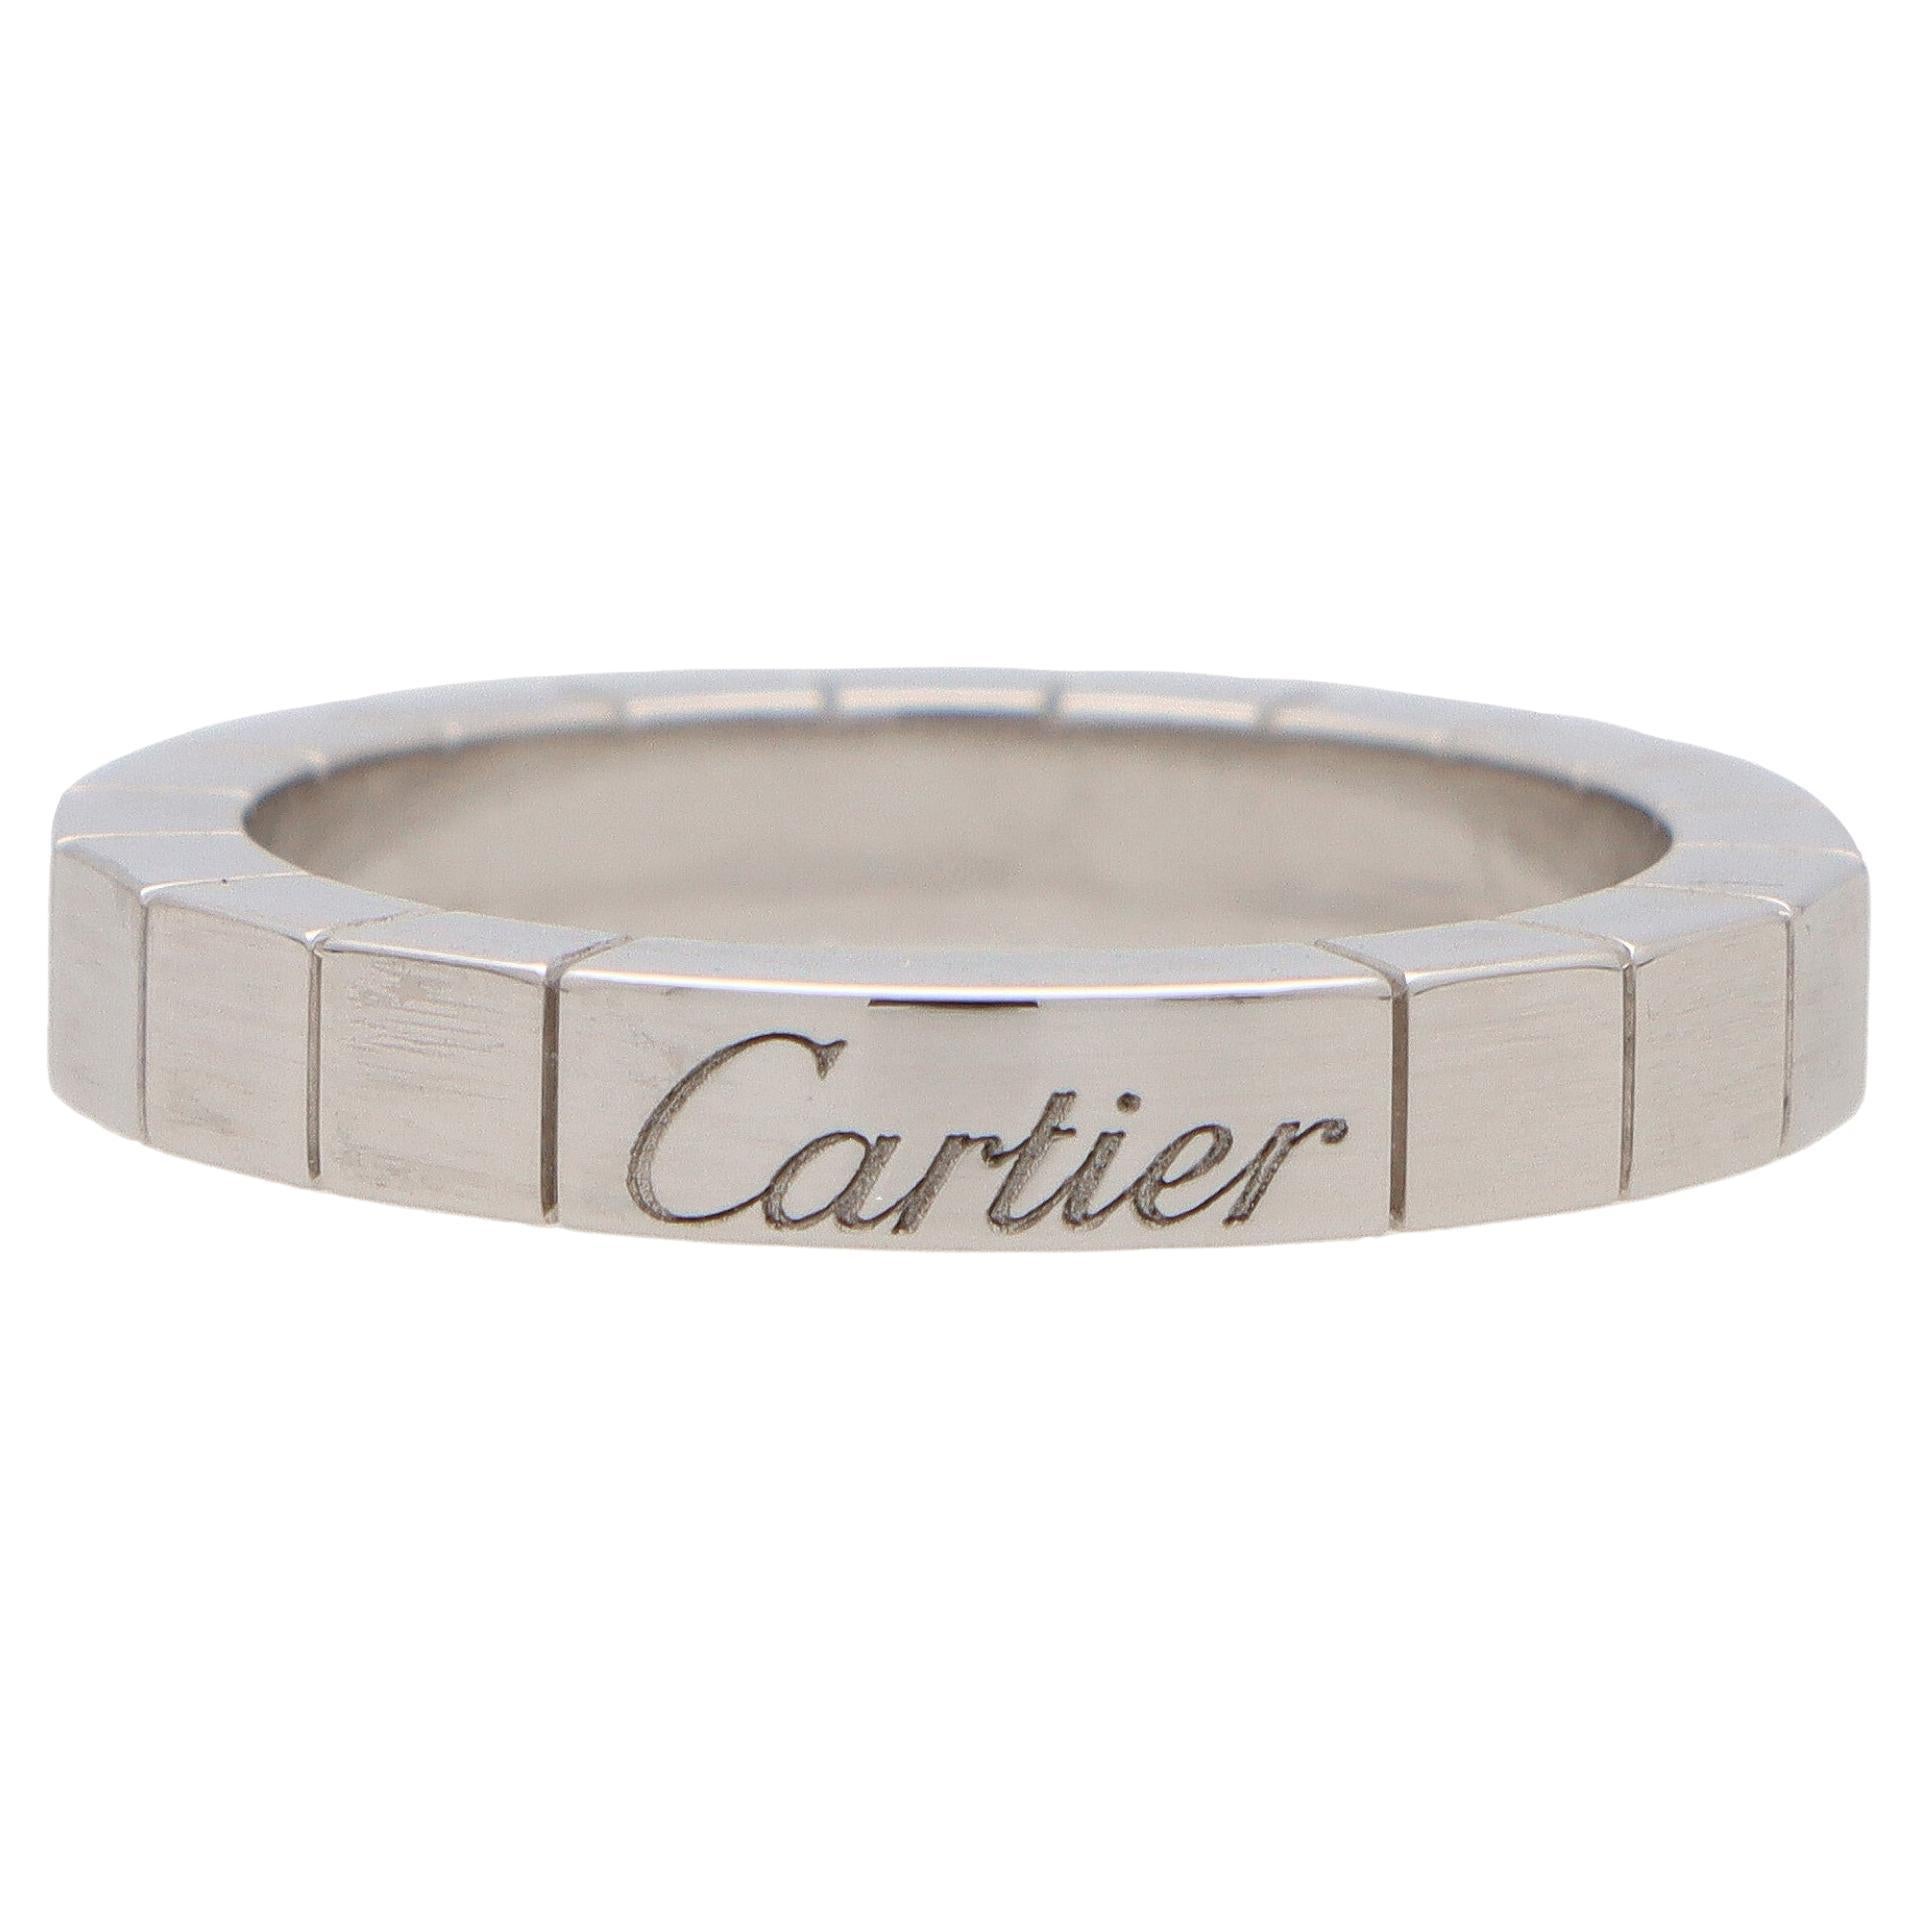 Vintage Cartier Lanières Brick Link Band Ring Set in 18k White Gold